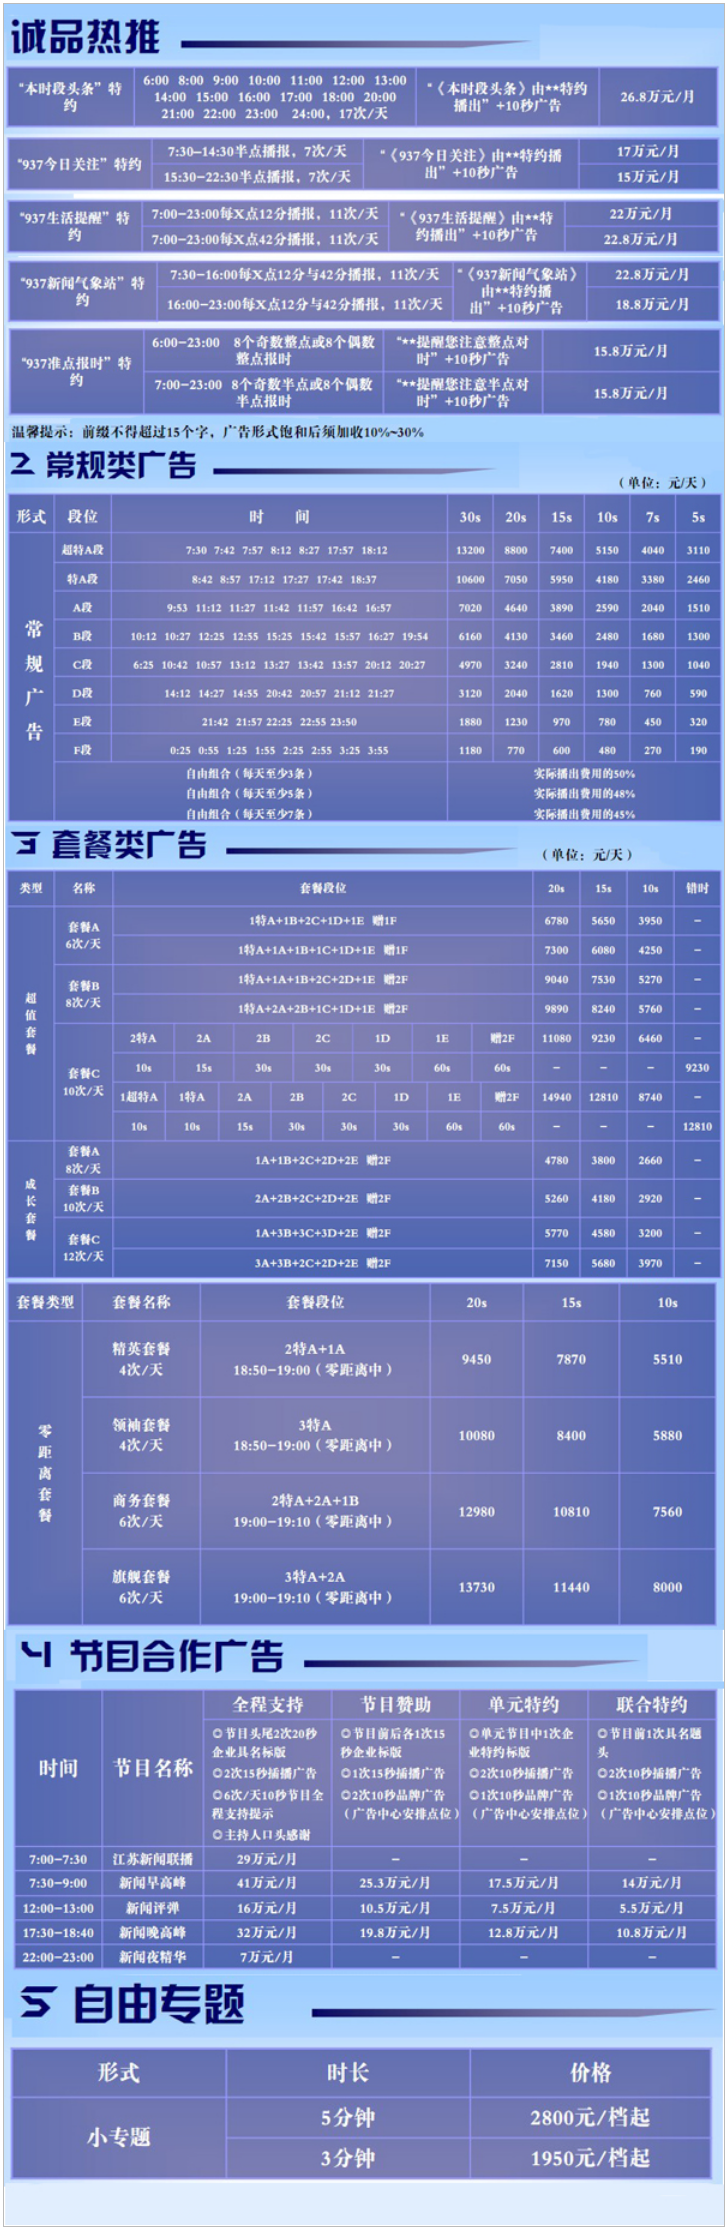 2013江苏人民广播电台新闻广播FM93.7广告报价表.png